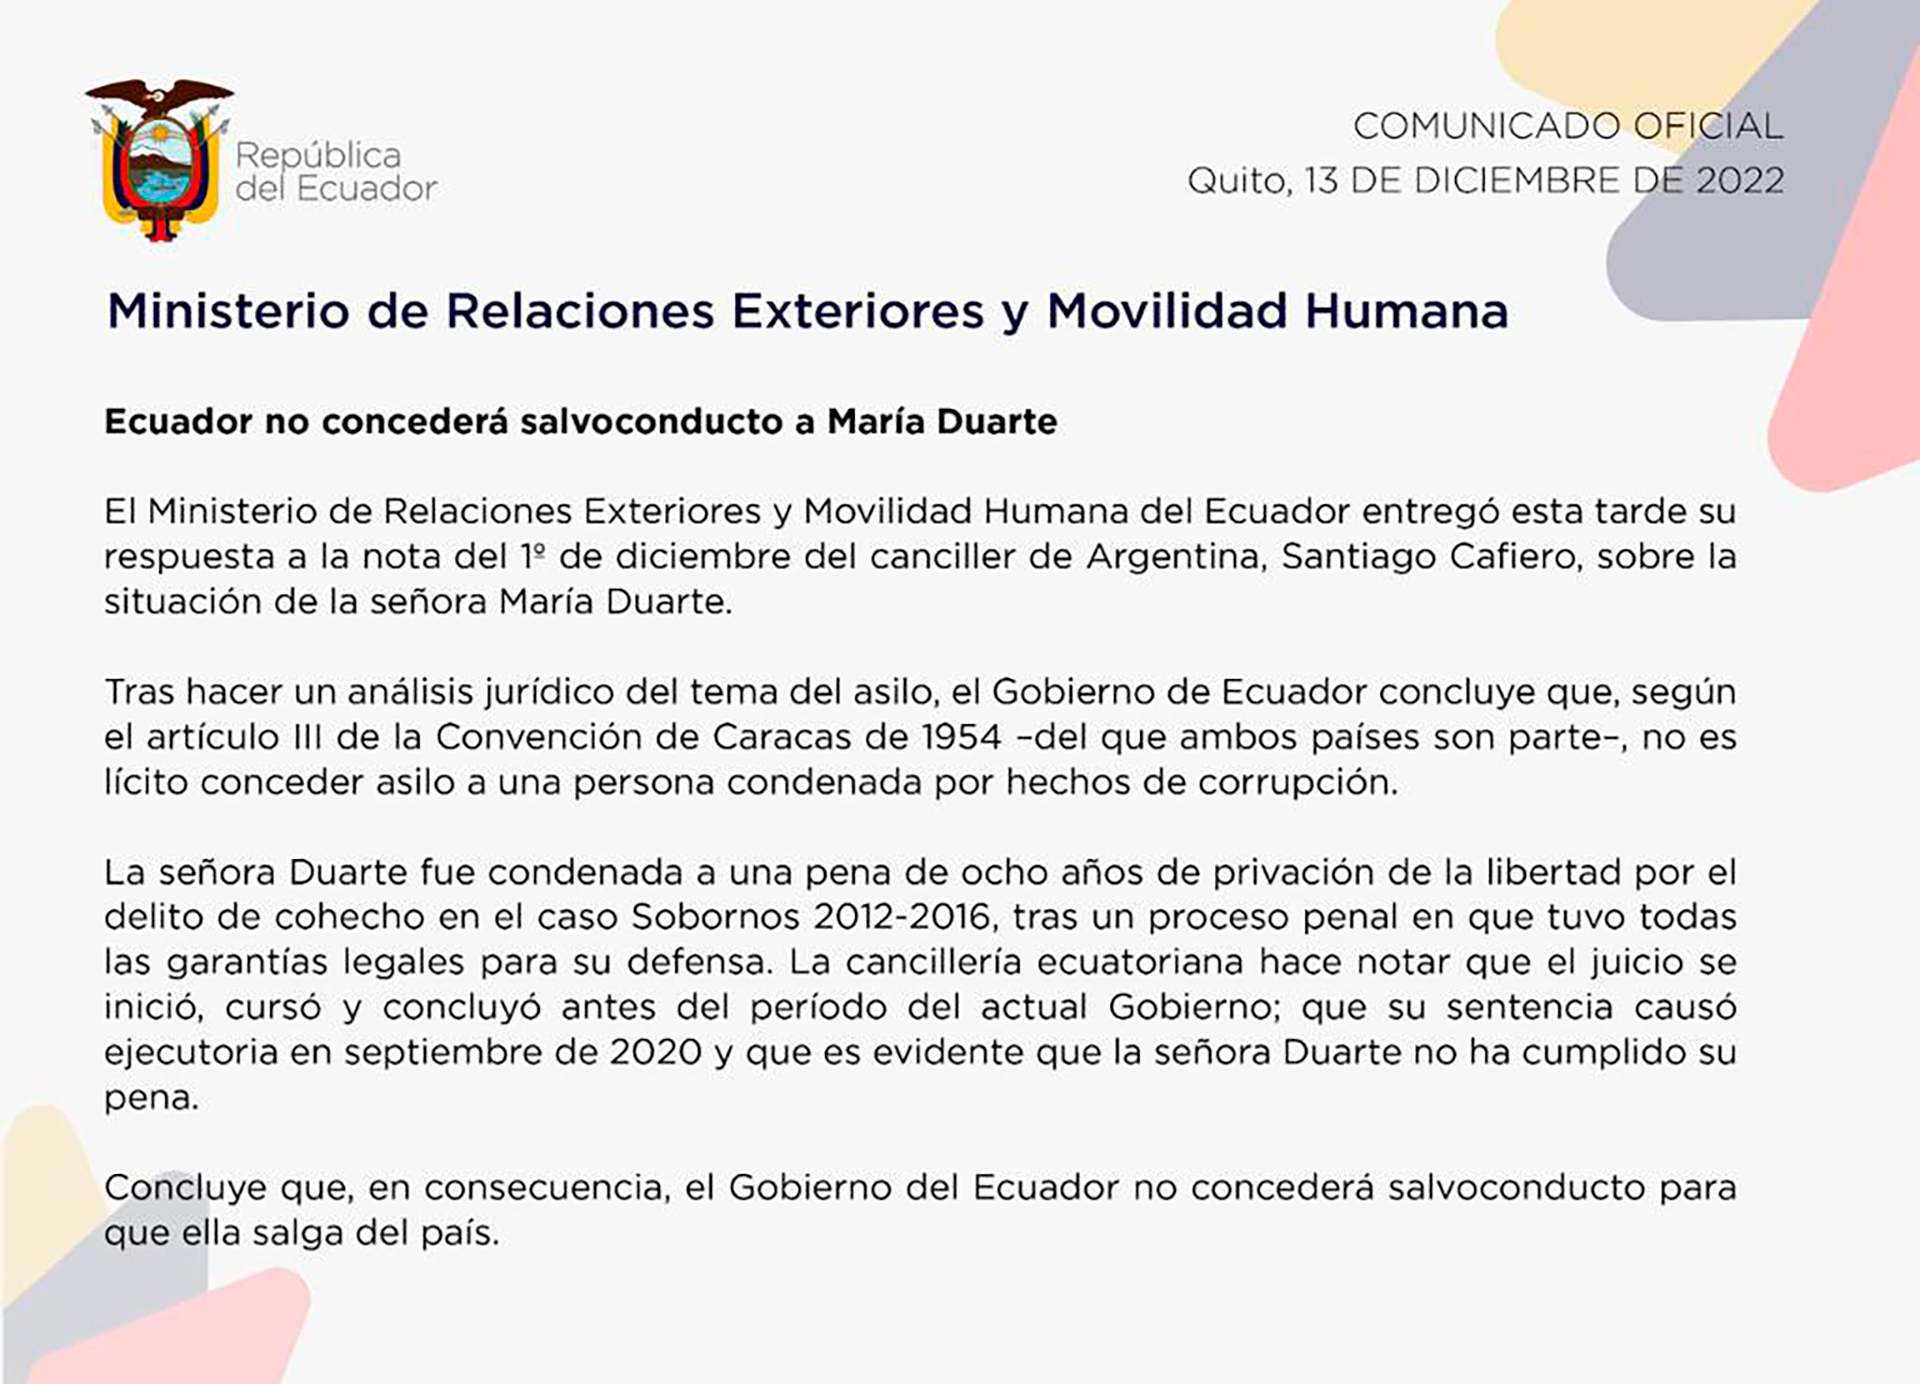 El comunicado oficial de la Cancillería ecuatoriana de este martes donde se afirmó que "es ilícito conceder el asilo a una persona condenada por corrupción"